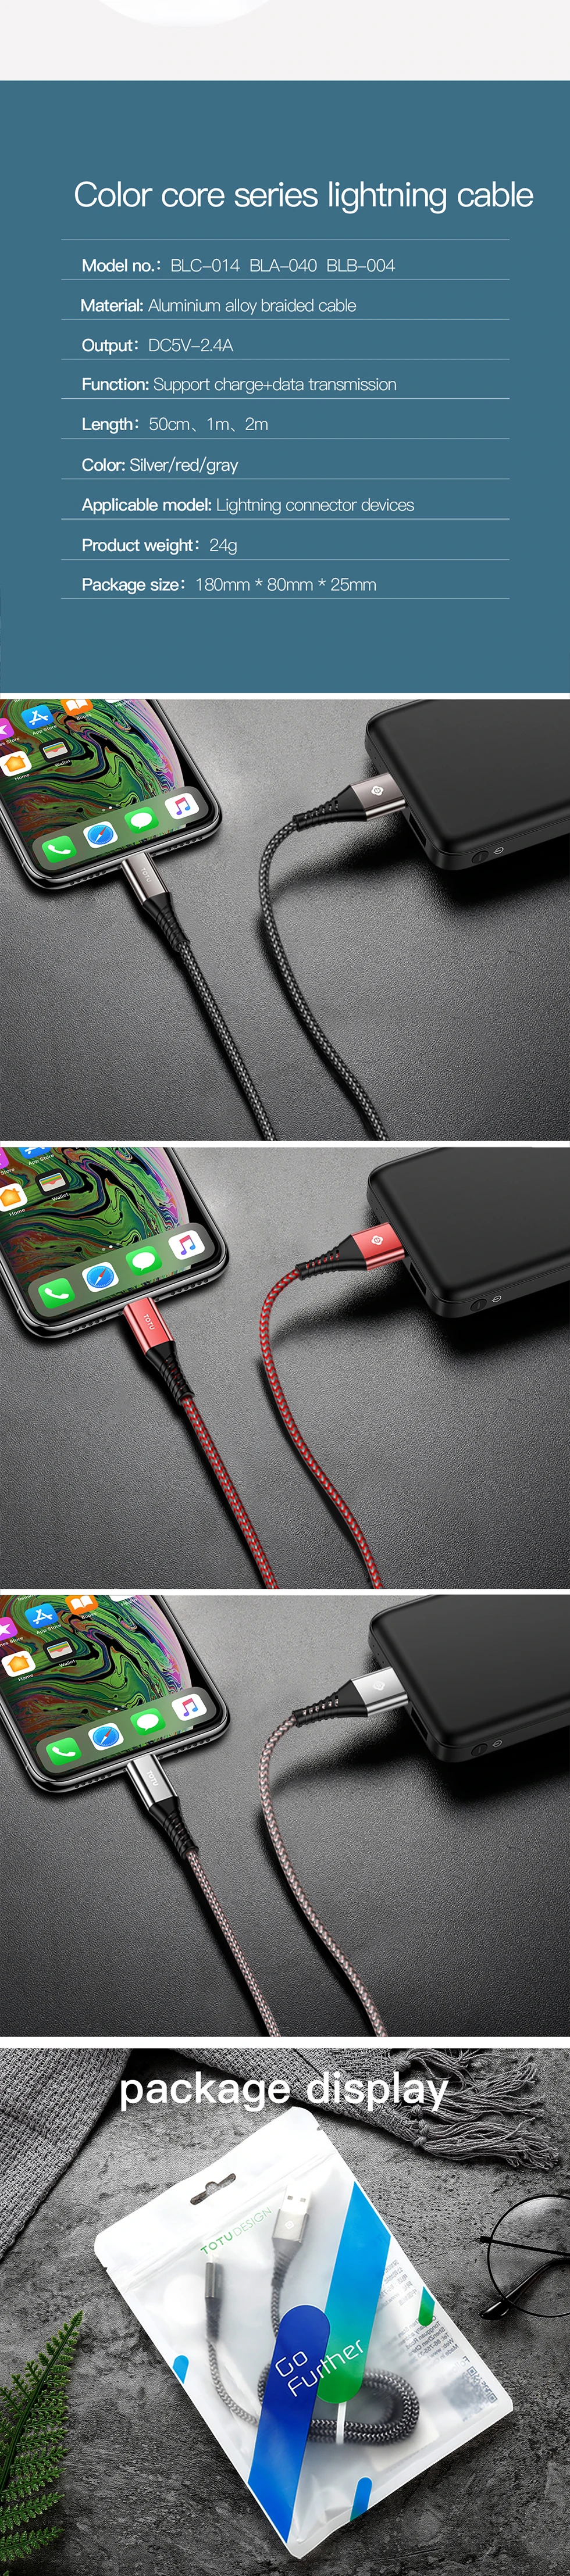 Для iPhone Xr XS Max X 8 7 6 6S 5 5S USB кабель 2.4A Быстрая зарядка зарядное устройство кабель для передачи данных для Apple/Lightning/iPhone кабель короткий шнур